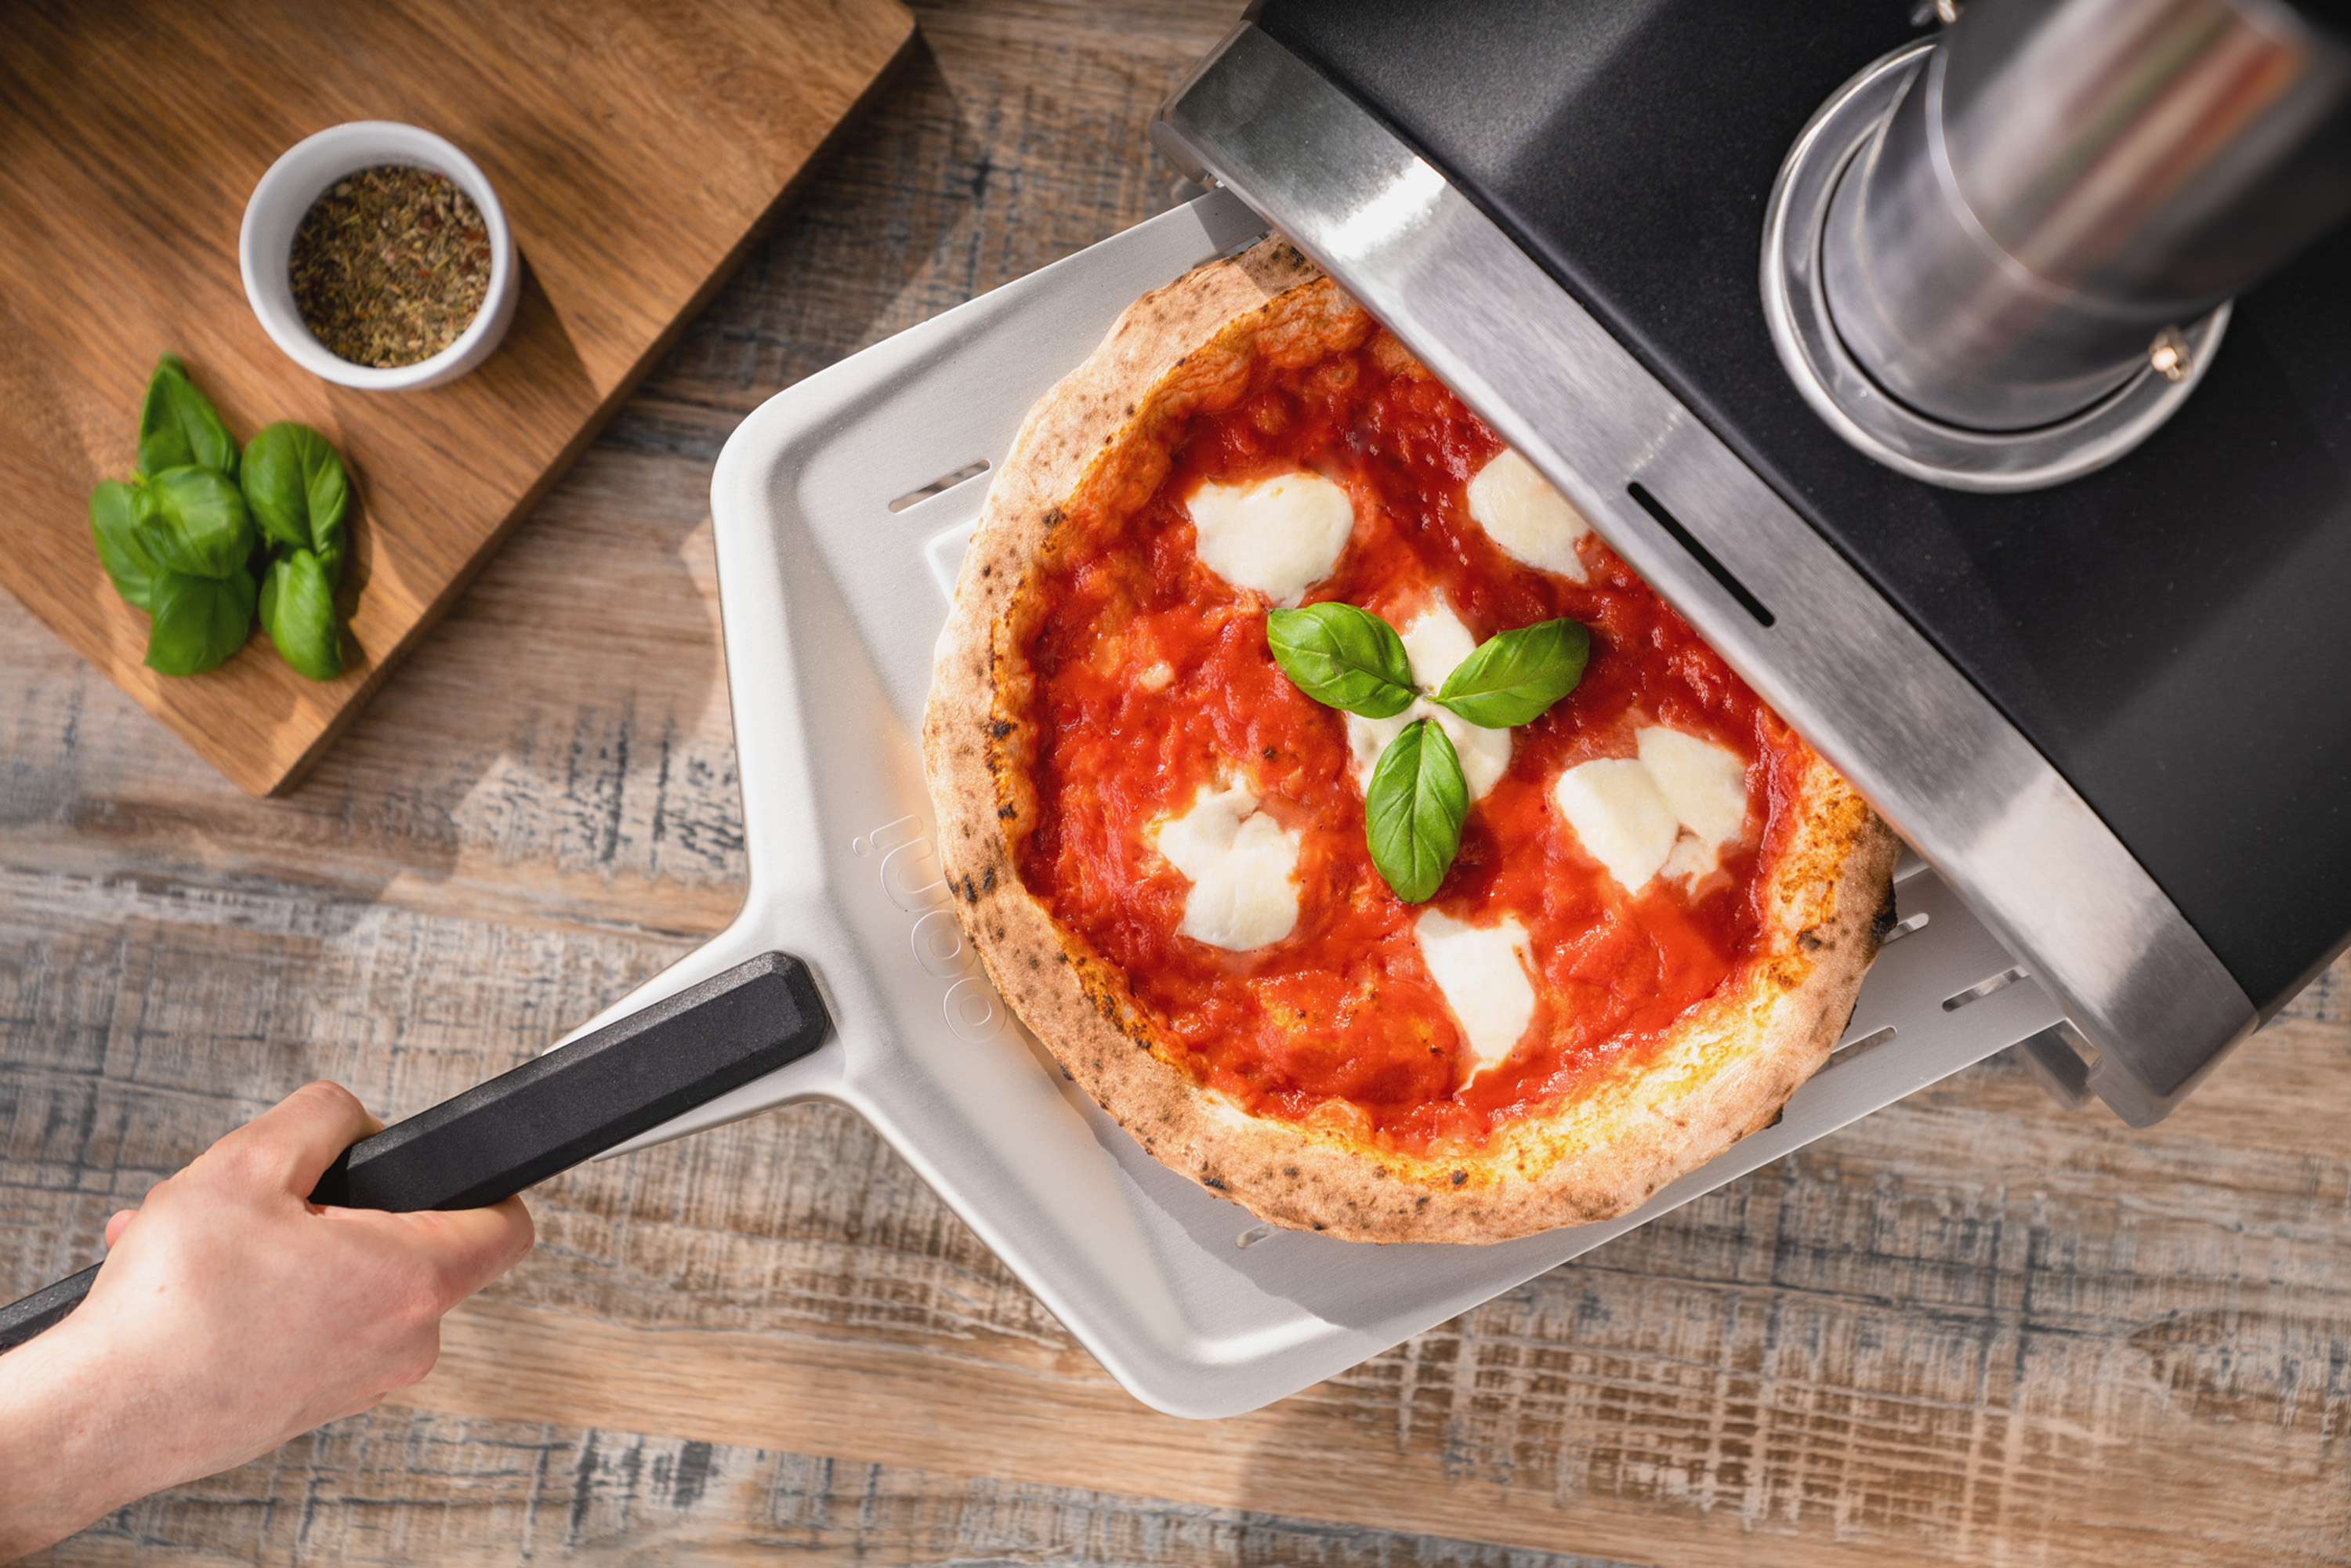 Premio2G Indoor / Outdoor Pizza Oven Kit